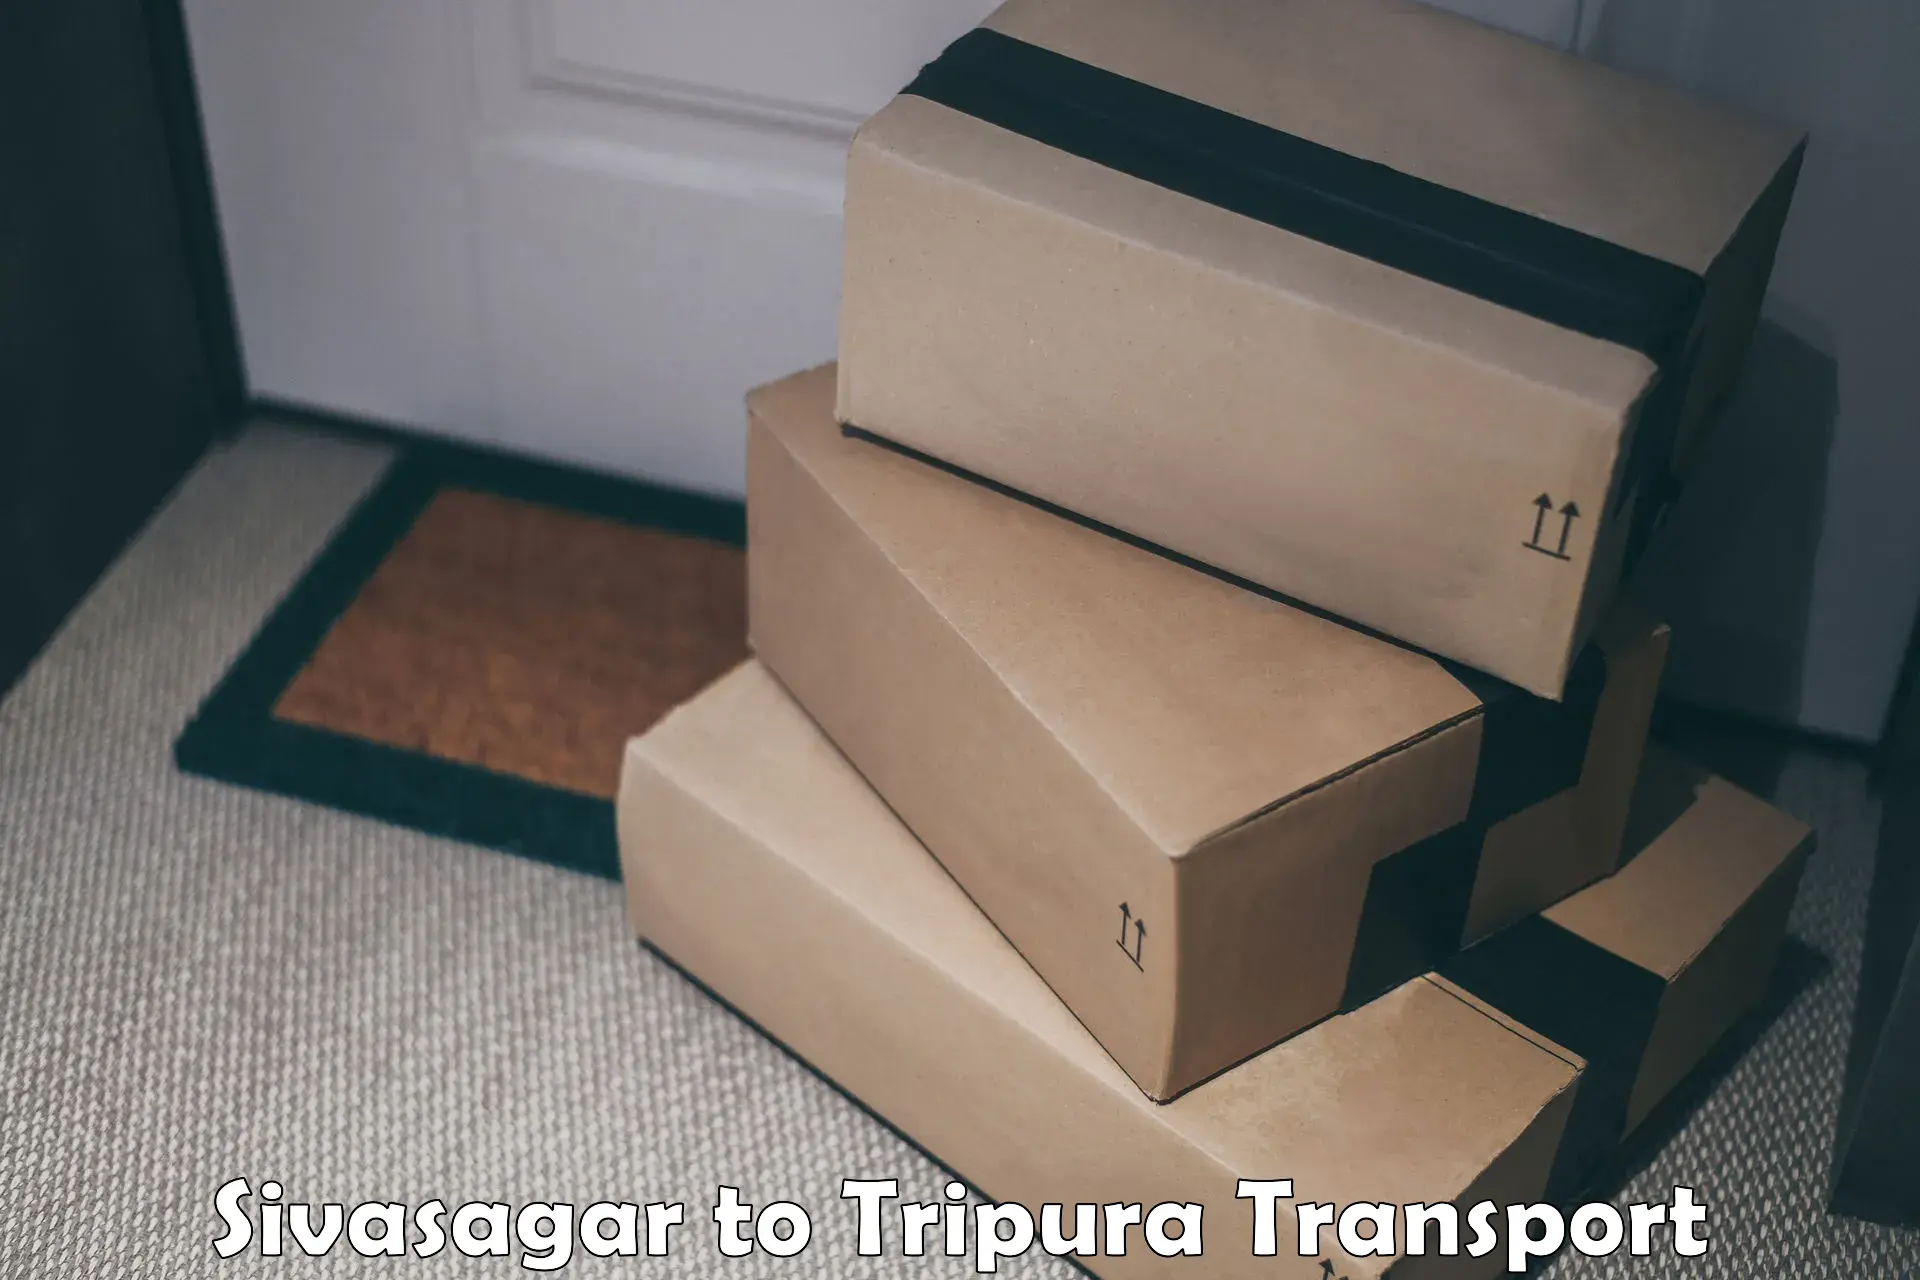 Transport in sharing Sivasagar to South Tripura